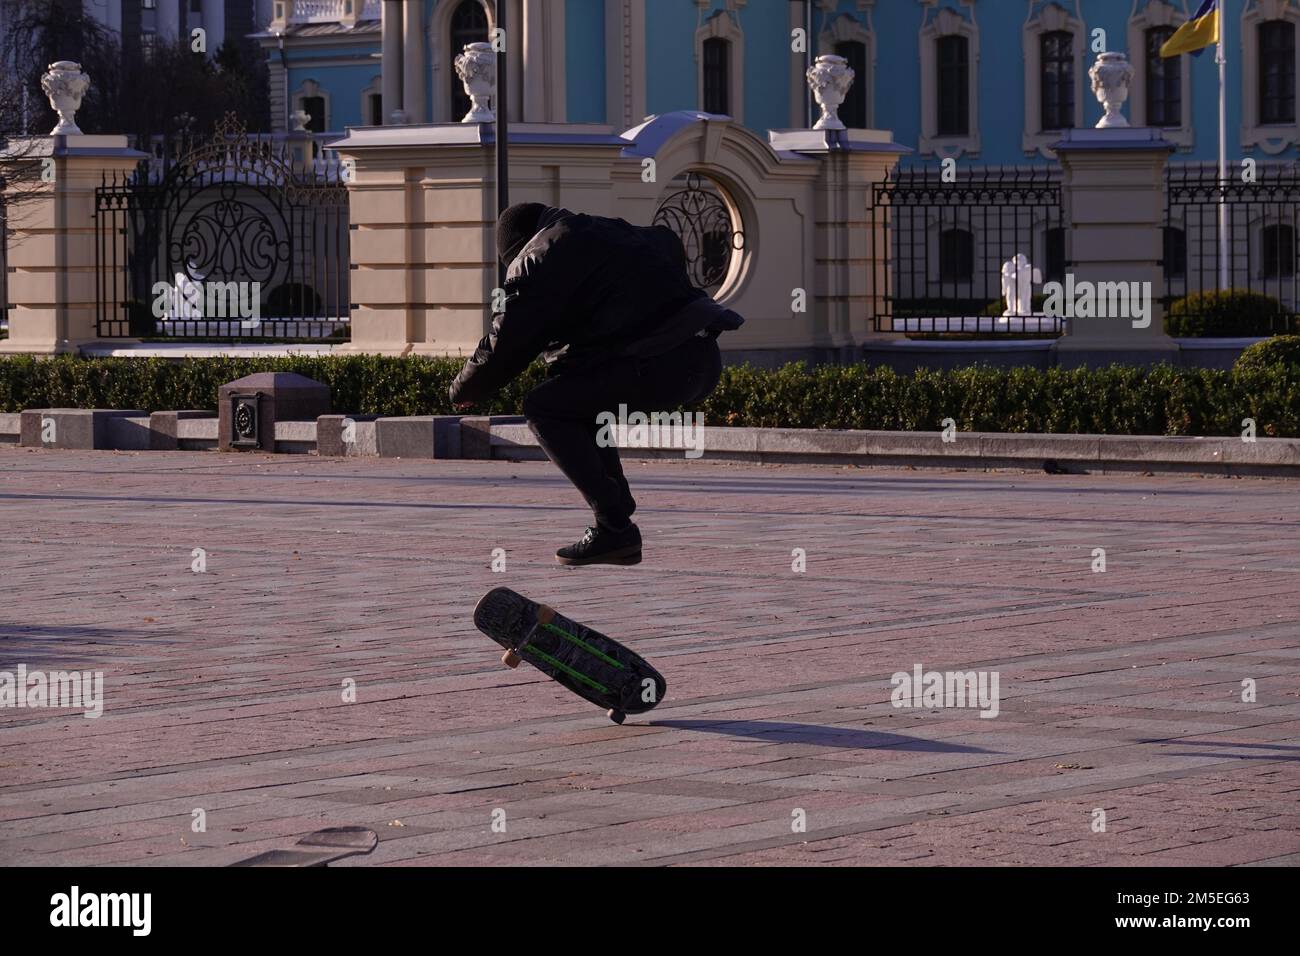 Kiev, Ukraine November 22, 2019: Boys ride a skateboard in the park. Stock Photo